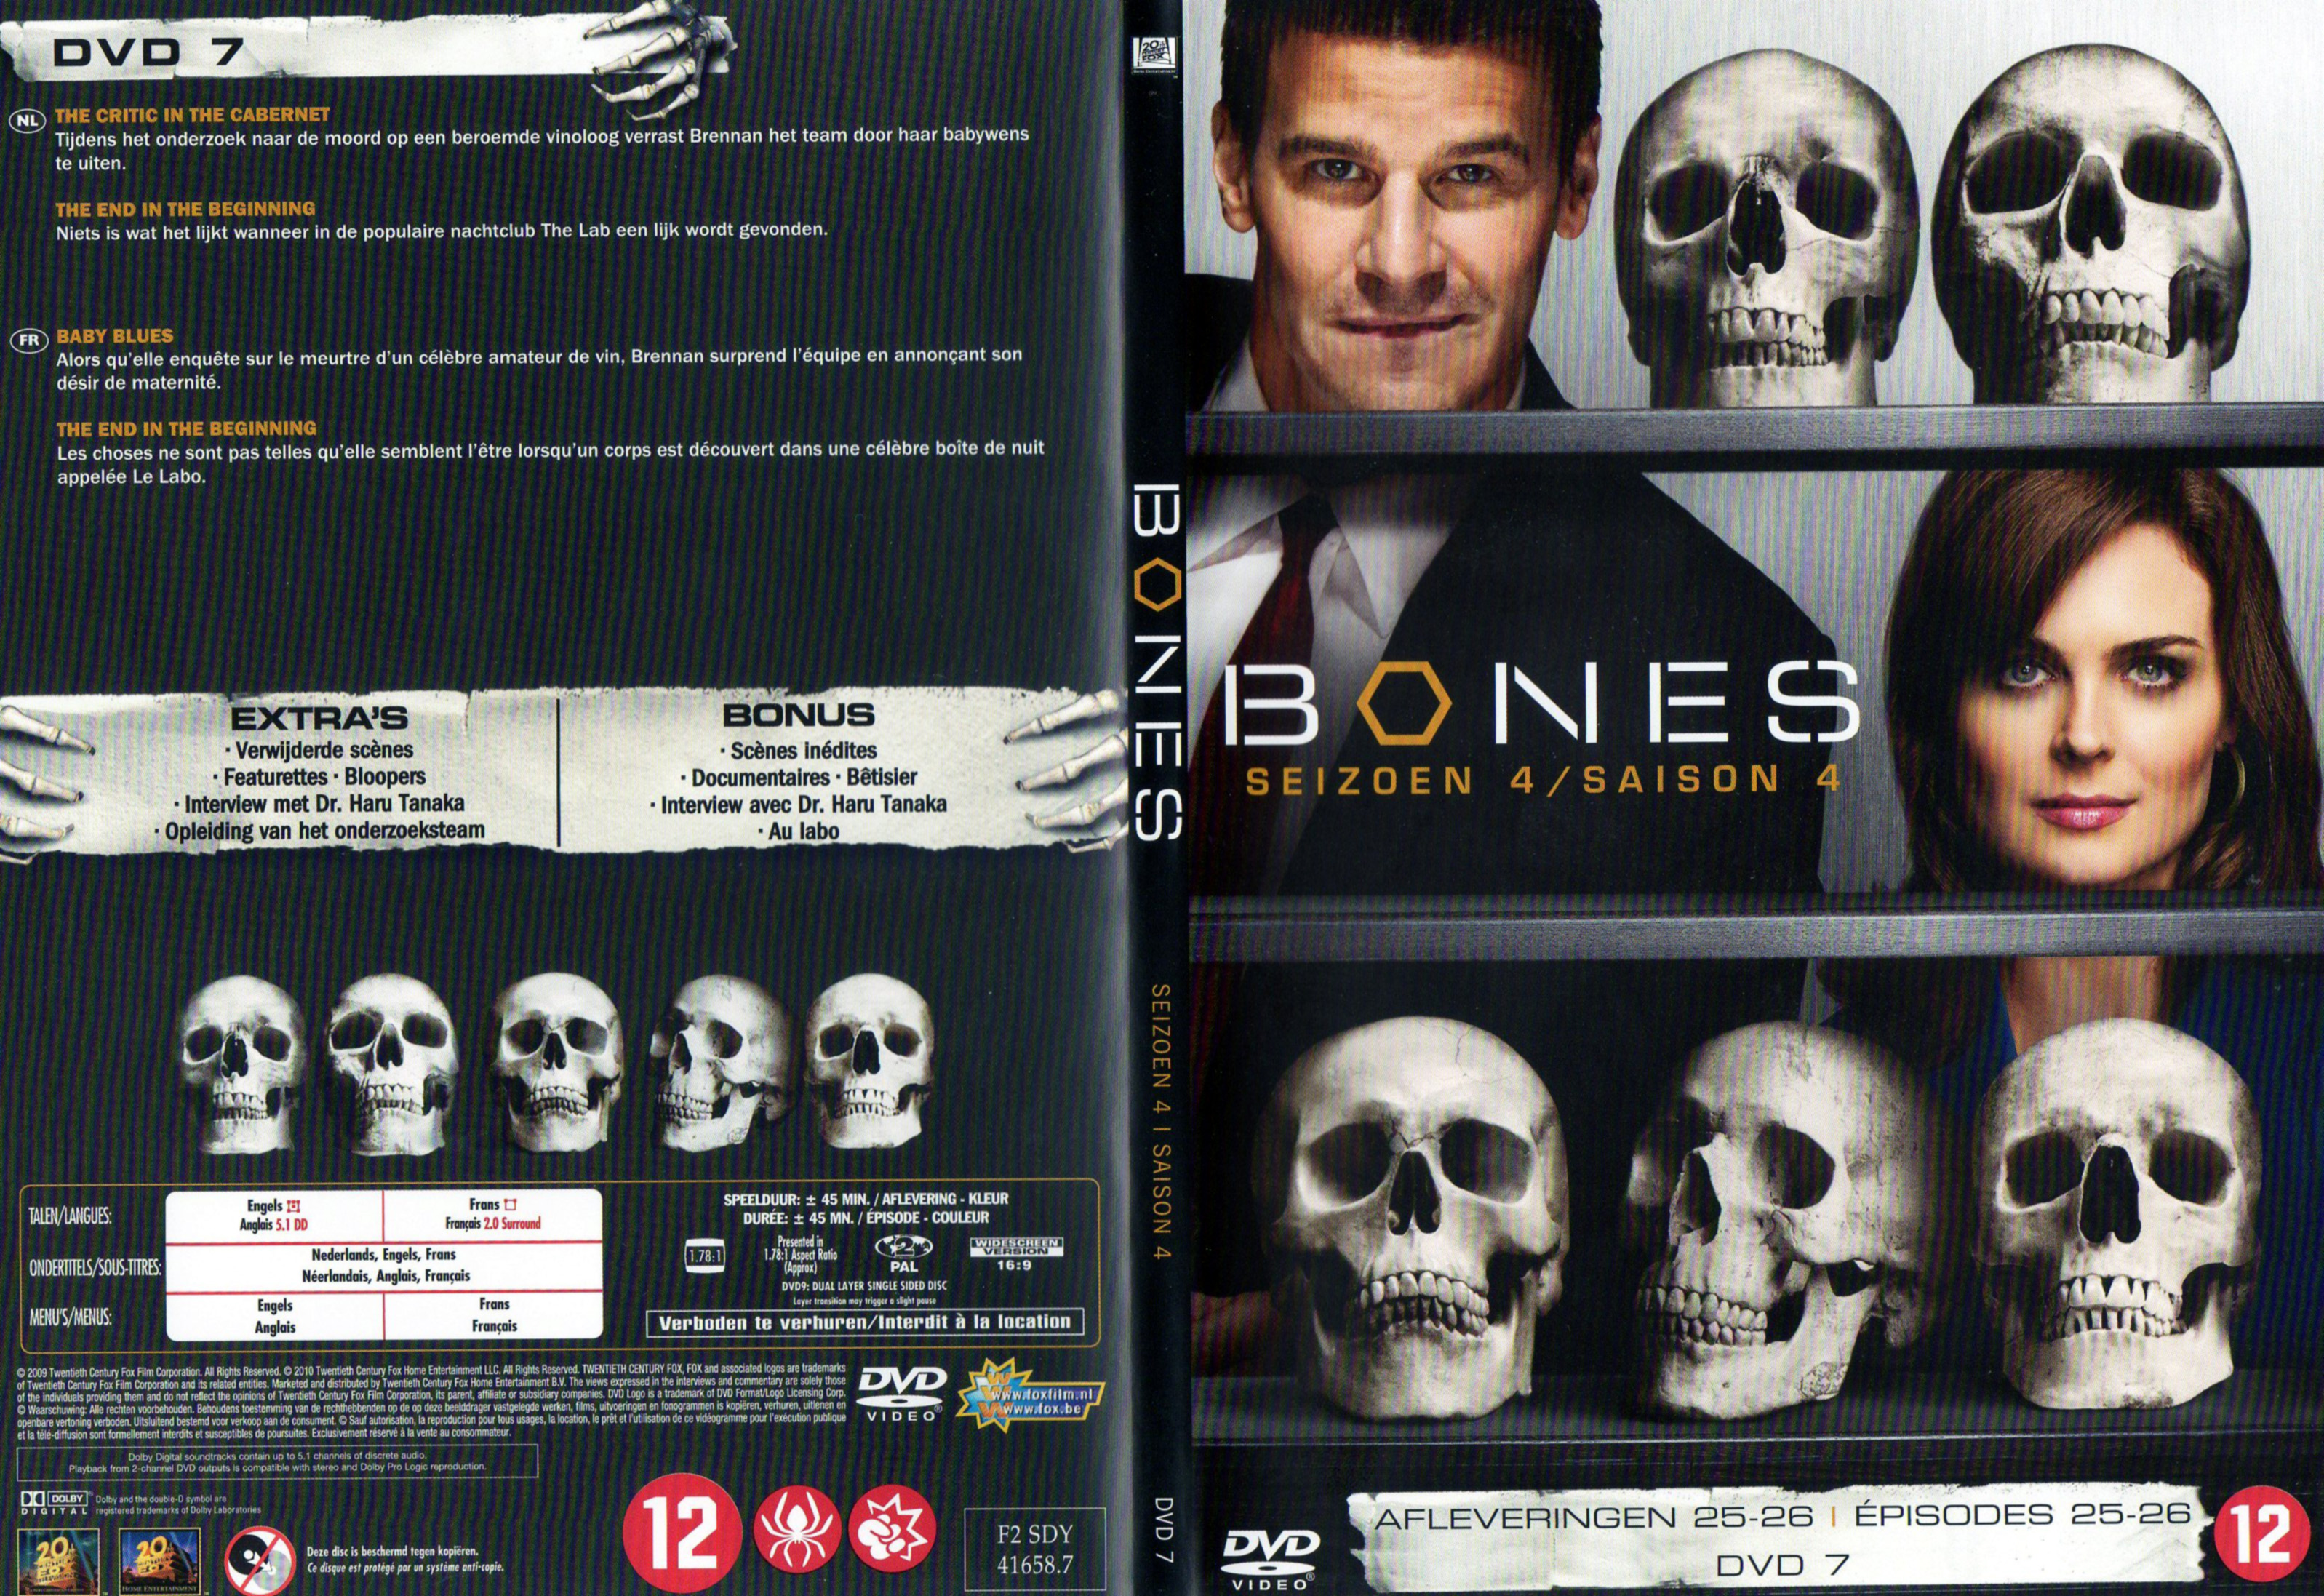 Jaquette DVD Bones Saison 4 DVD 7